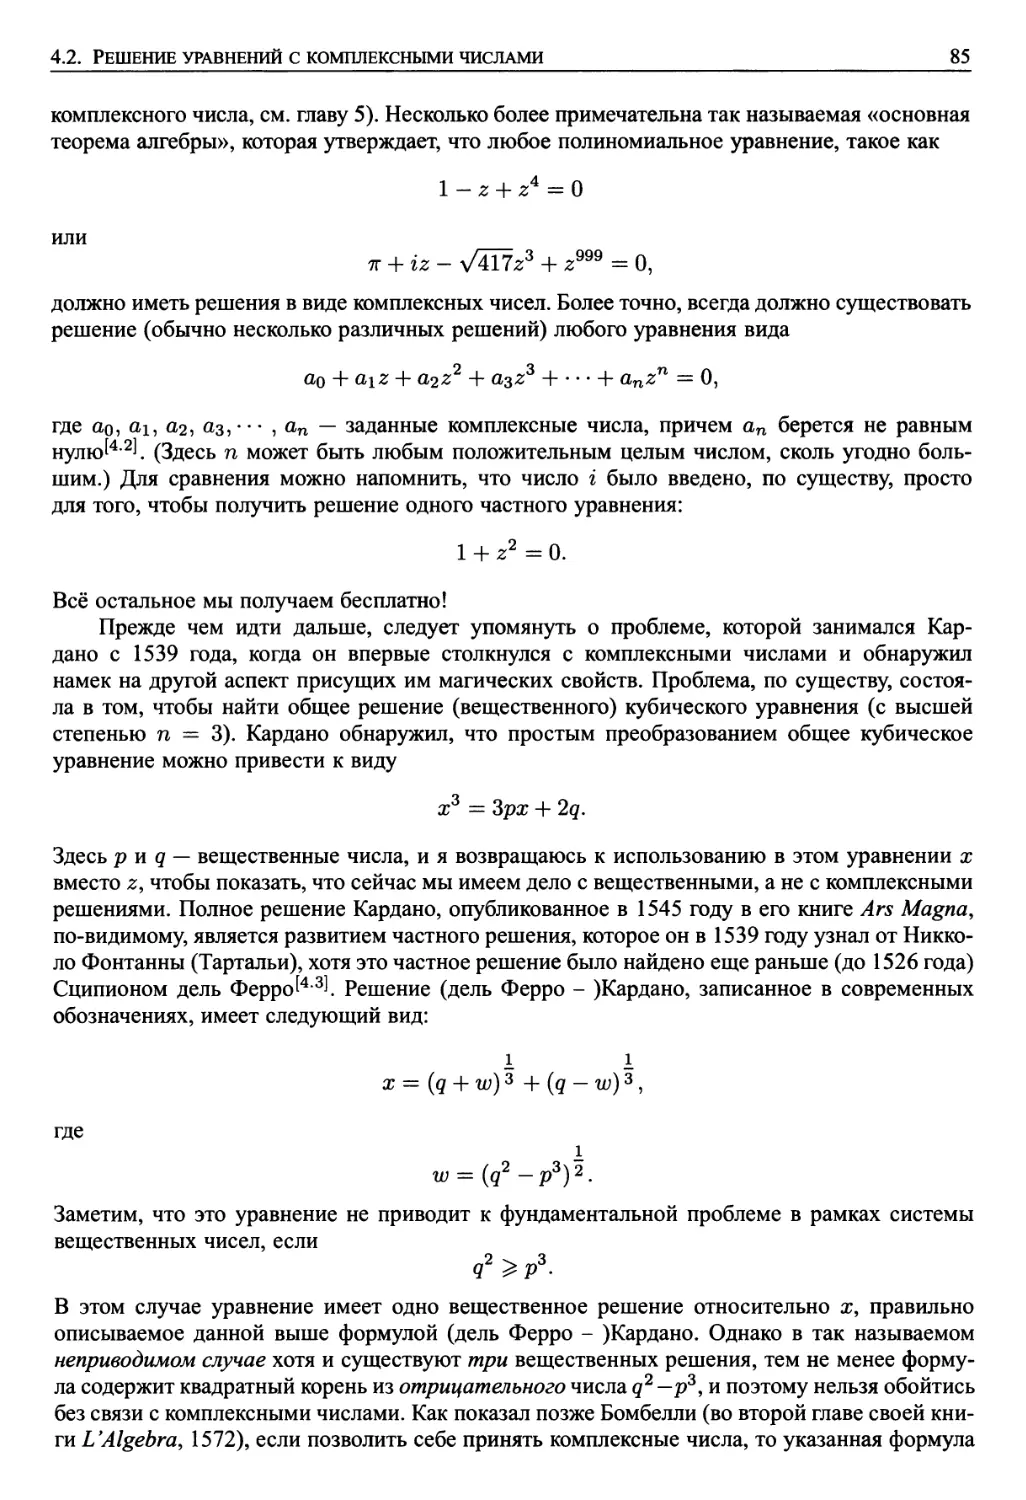 4.2. Решение уравнений с комплексными числами